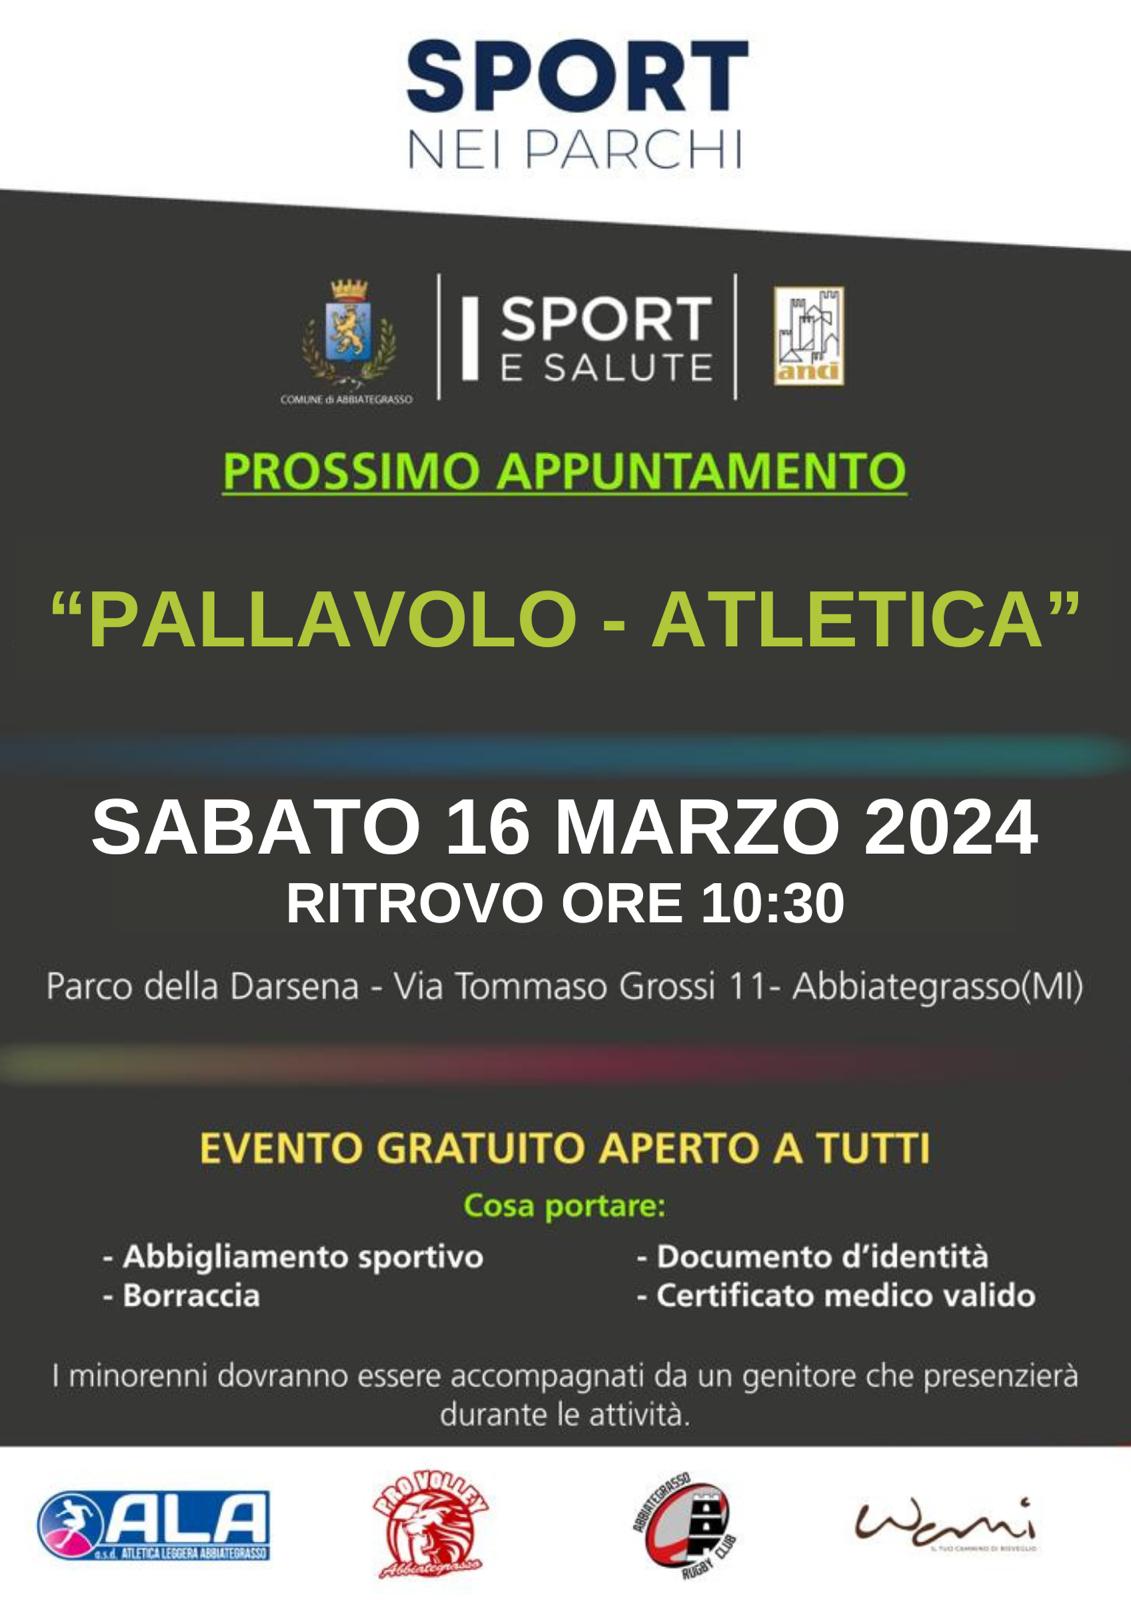 Sport nei parchi - Prossimo appuntamento "Pallavolo - Atletica" - sabato 16 marzo 2024 alle 10.30